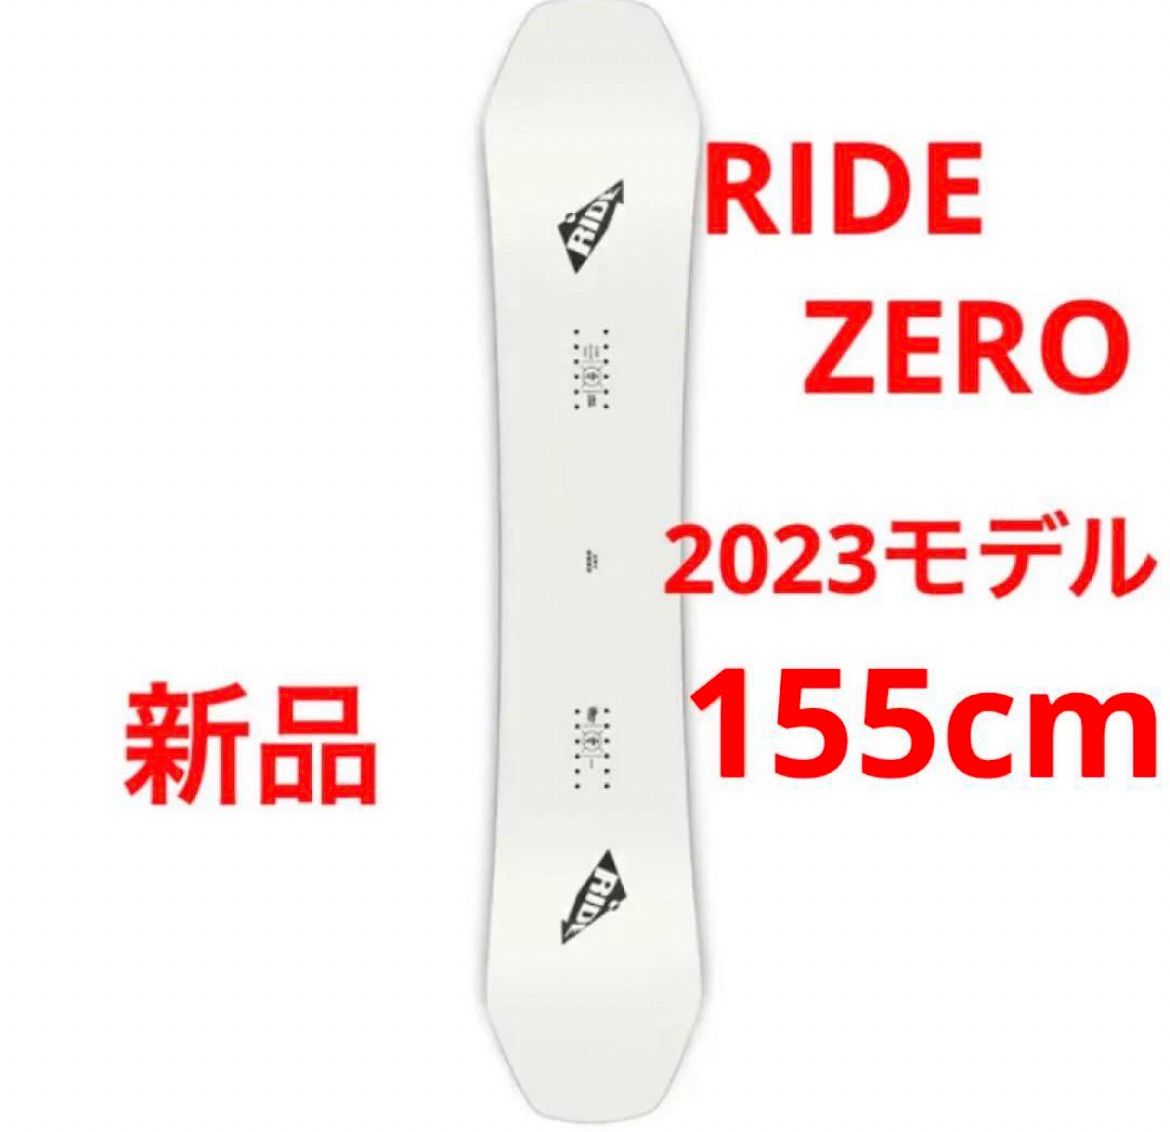 【新品_即日発送】22-23 RIDE ZERO メンズスノーボード 155cmボード情報